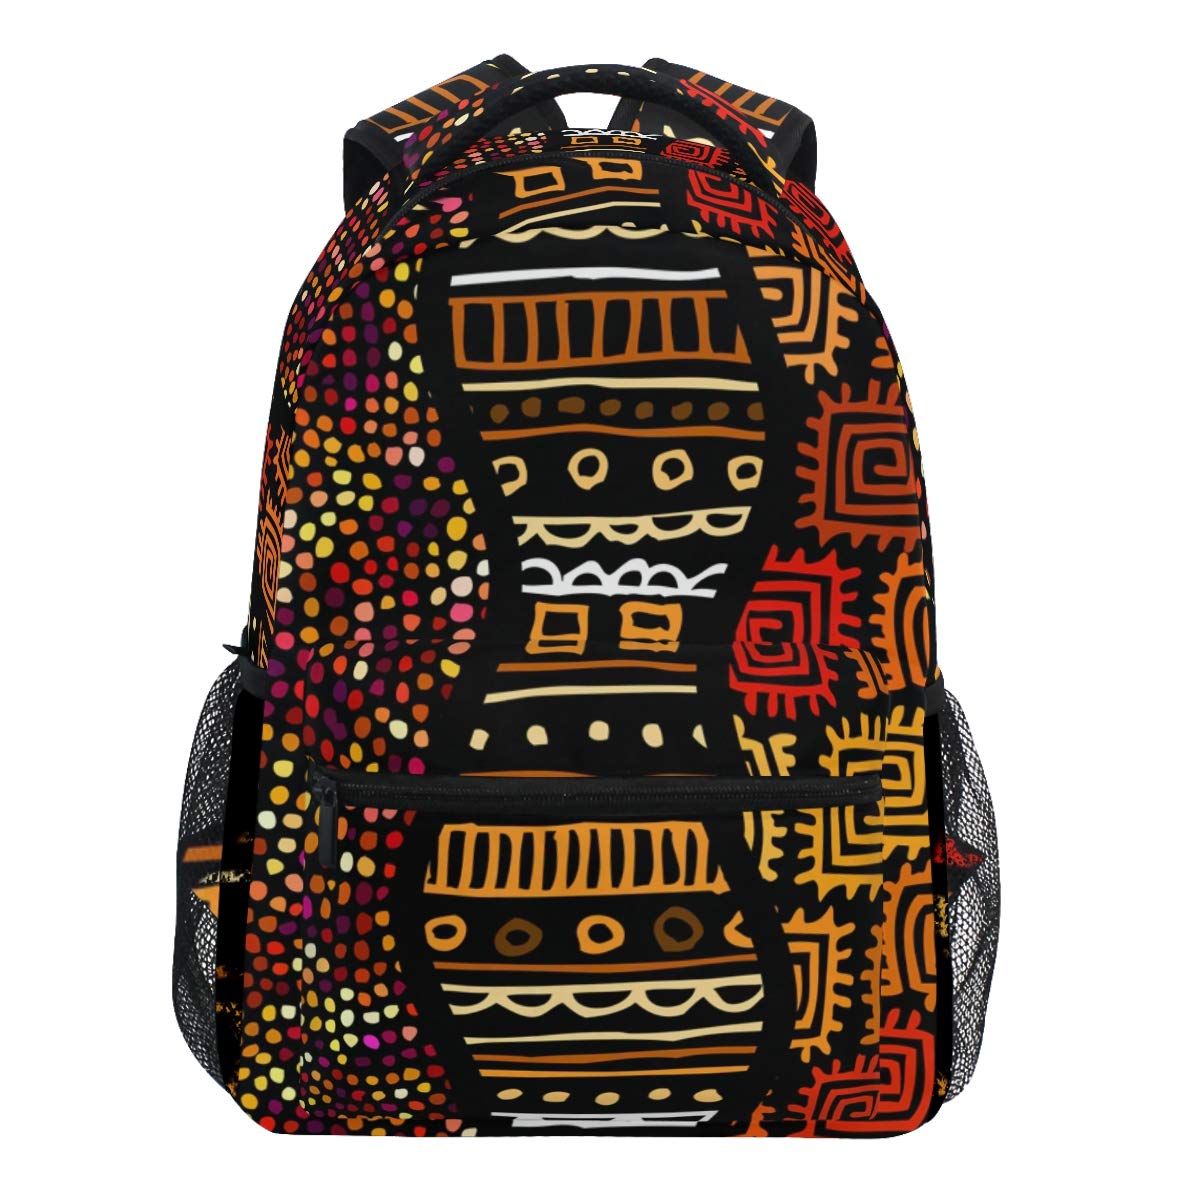 Oarencol Ethnischer Boho Afrikanischer Tribal unregelmäßige Polka Dots Indian Vintage Rucksack Bookbag Daypack Reise Schule College Tasche für Damen Herren Mädchen Jungen